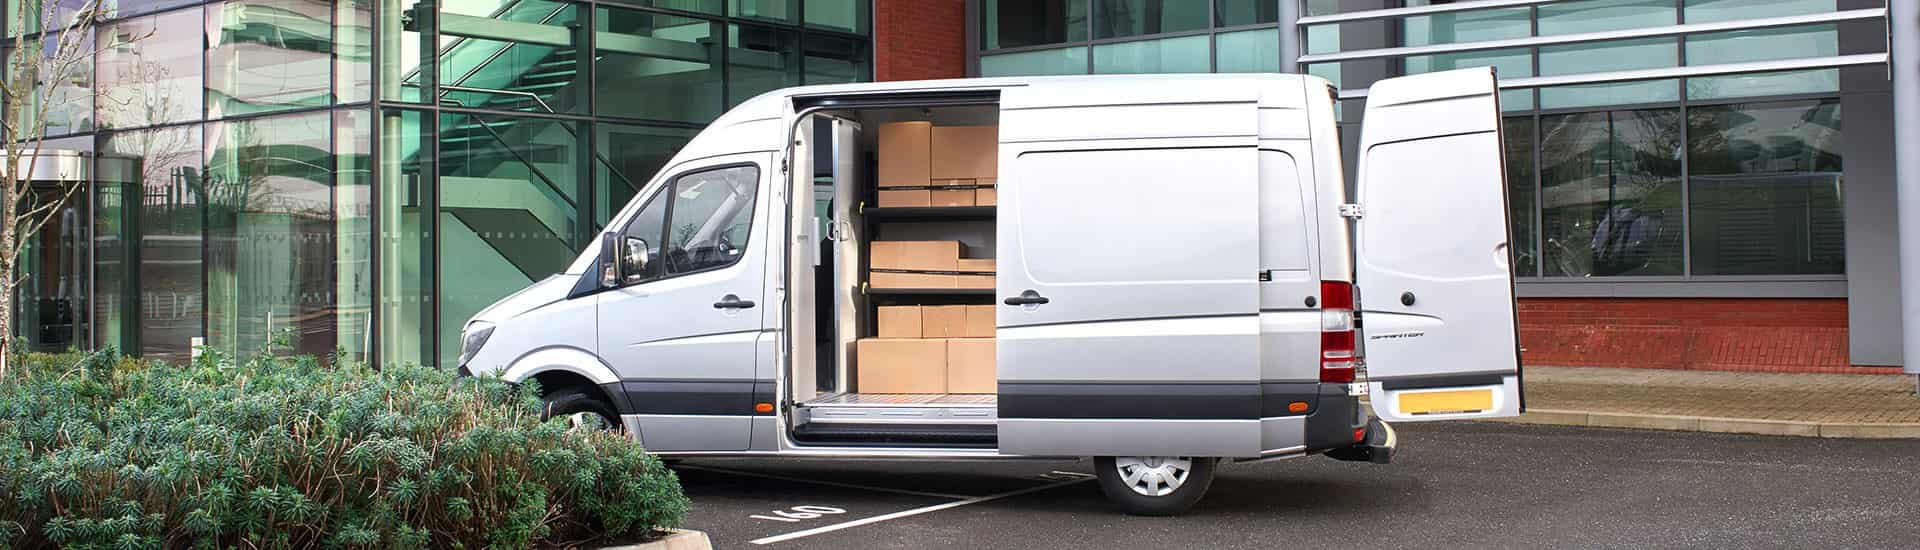 van shelving system for delivery vans modul express